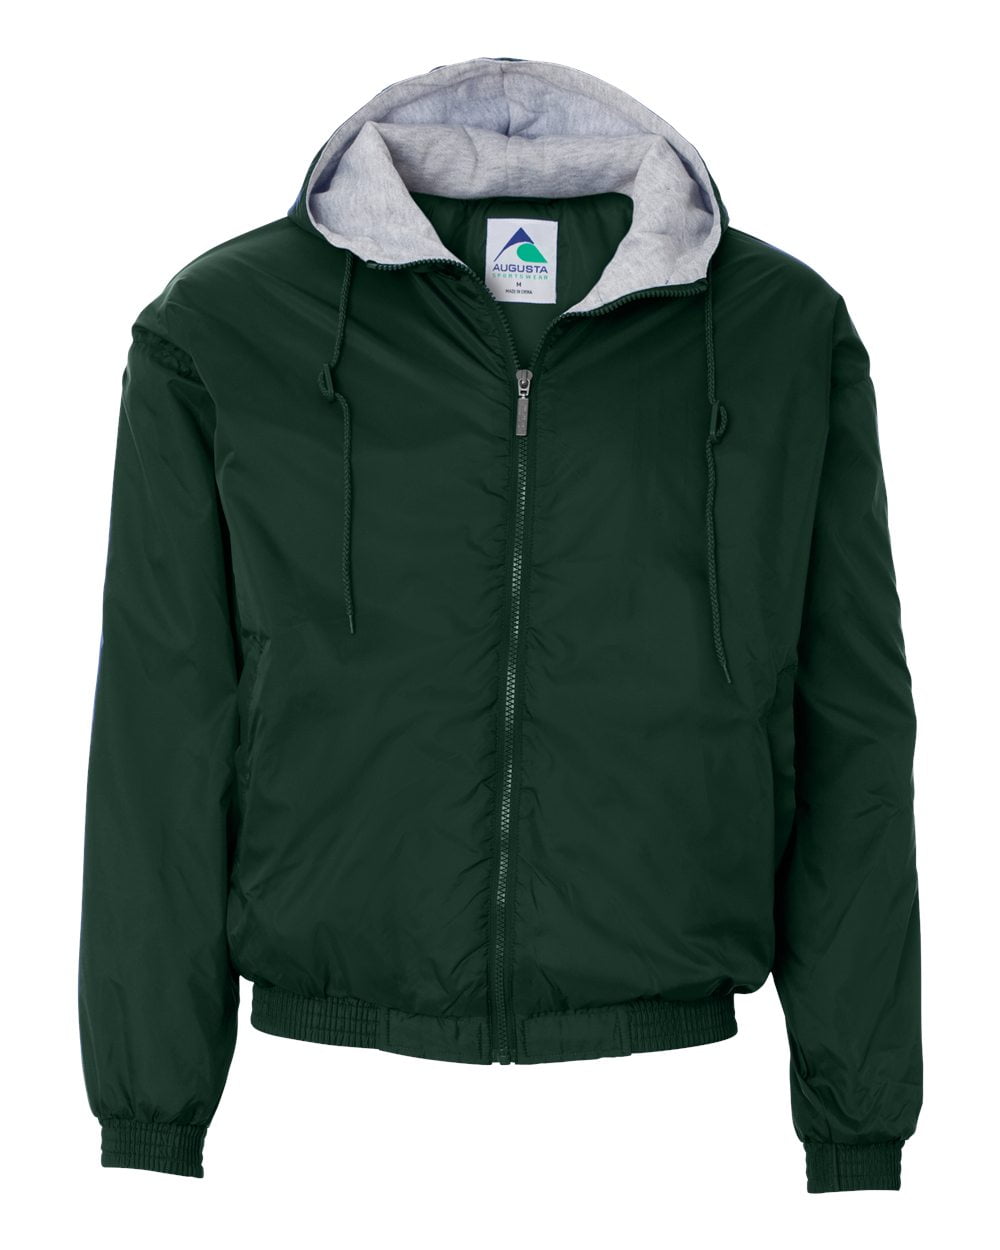 Augusta Sportswear Mens Hooded Taffeta Jacket//Fleece Lined